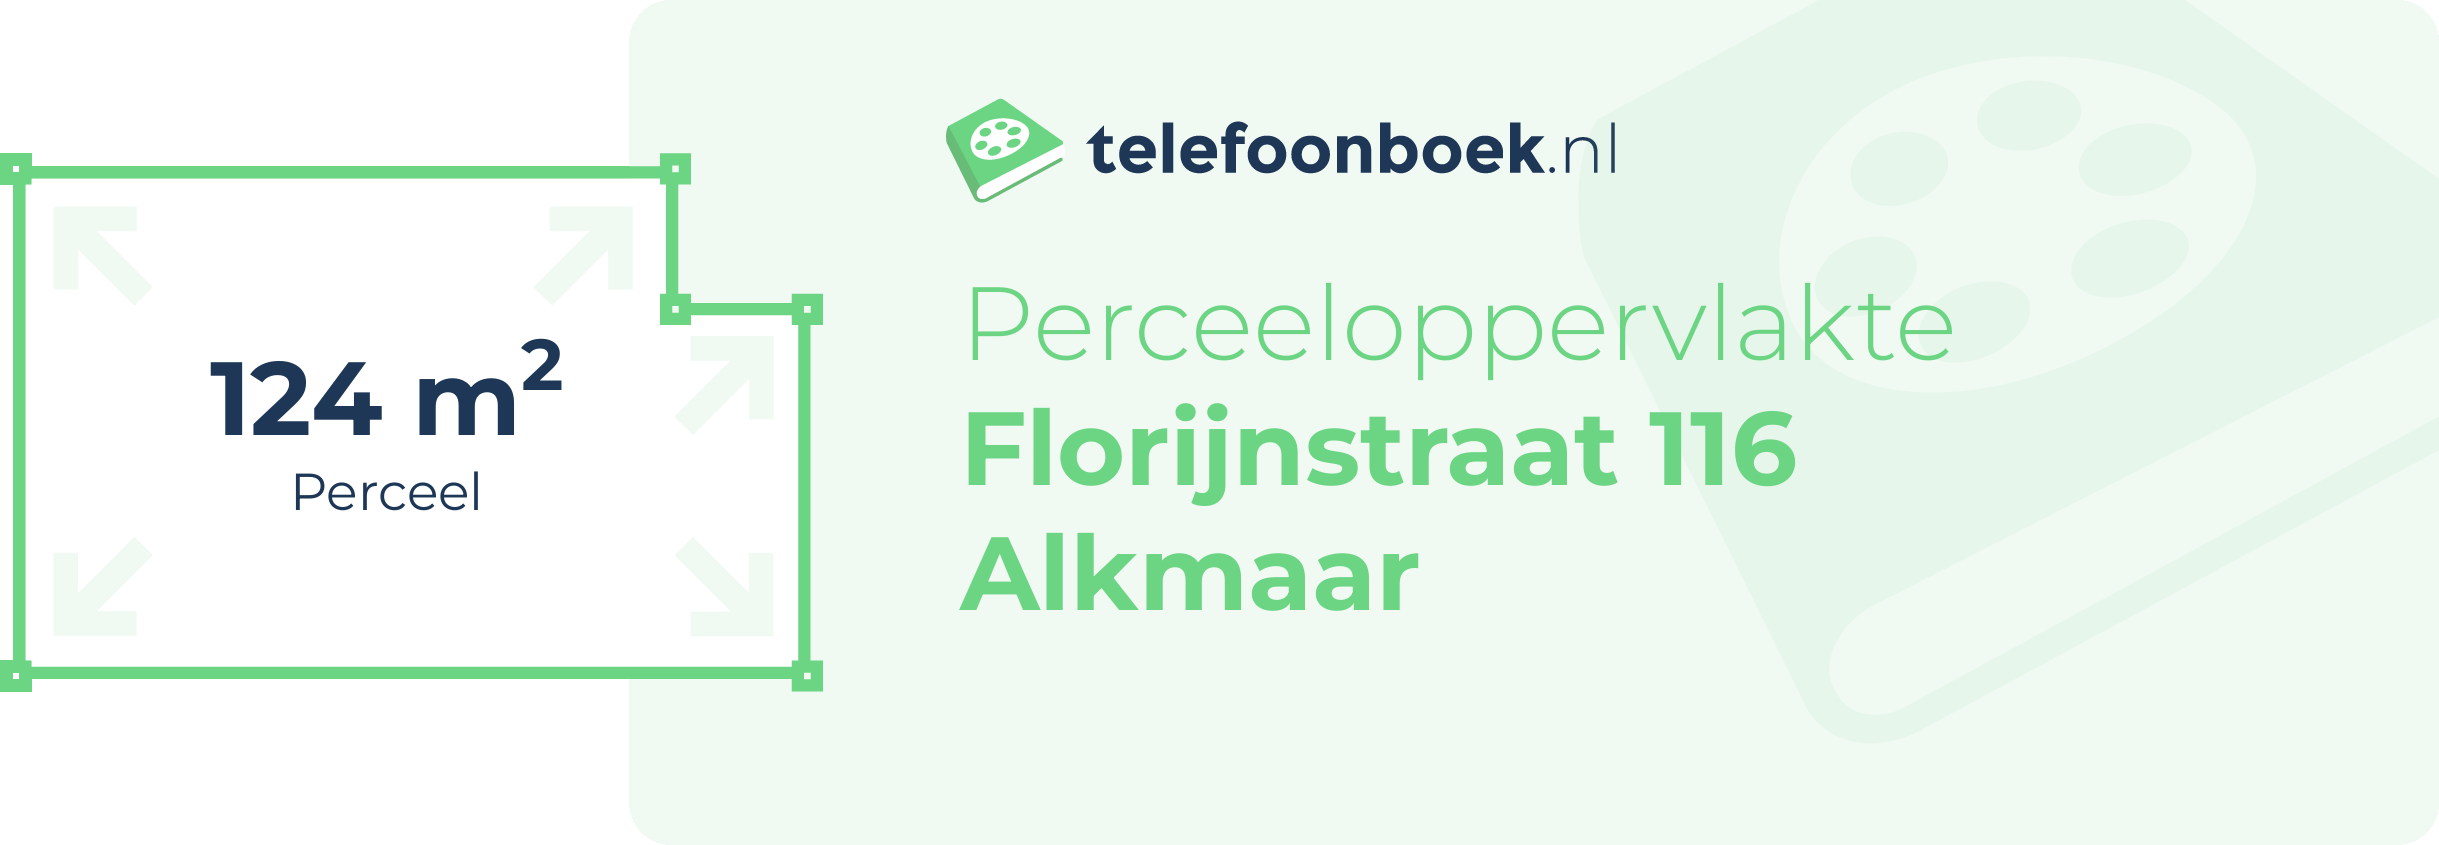 Perceeloppervlakte Florijnstraat 116 Alkmaar